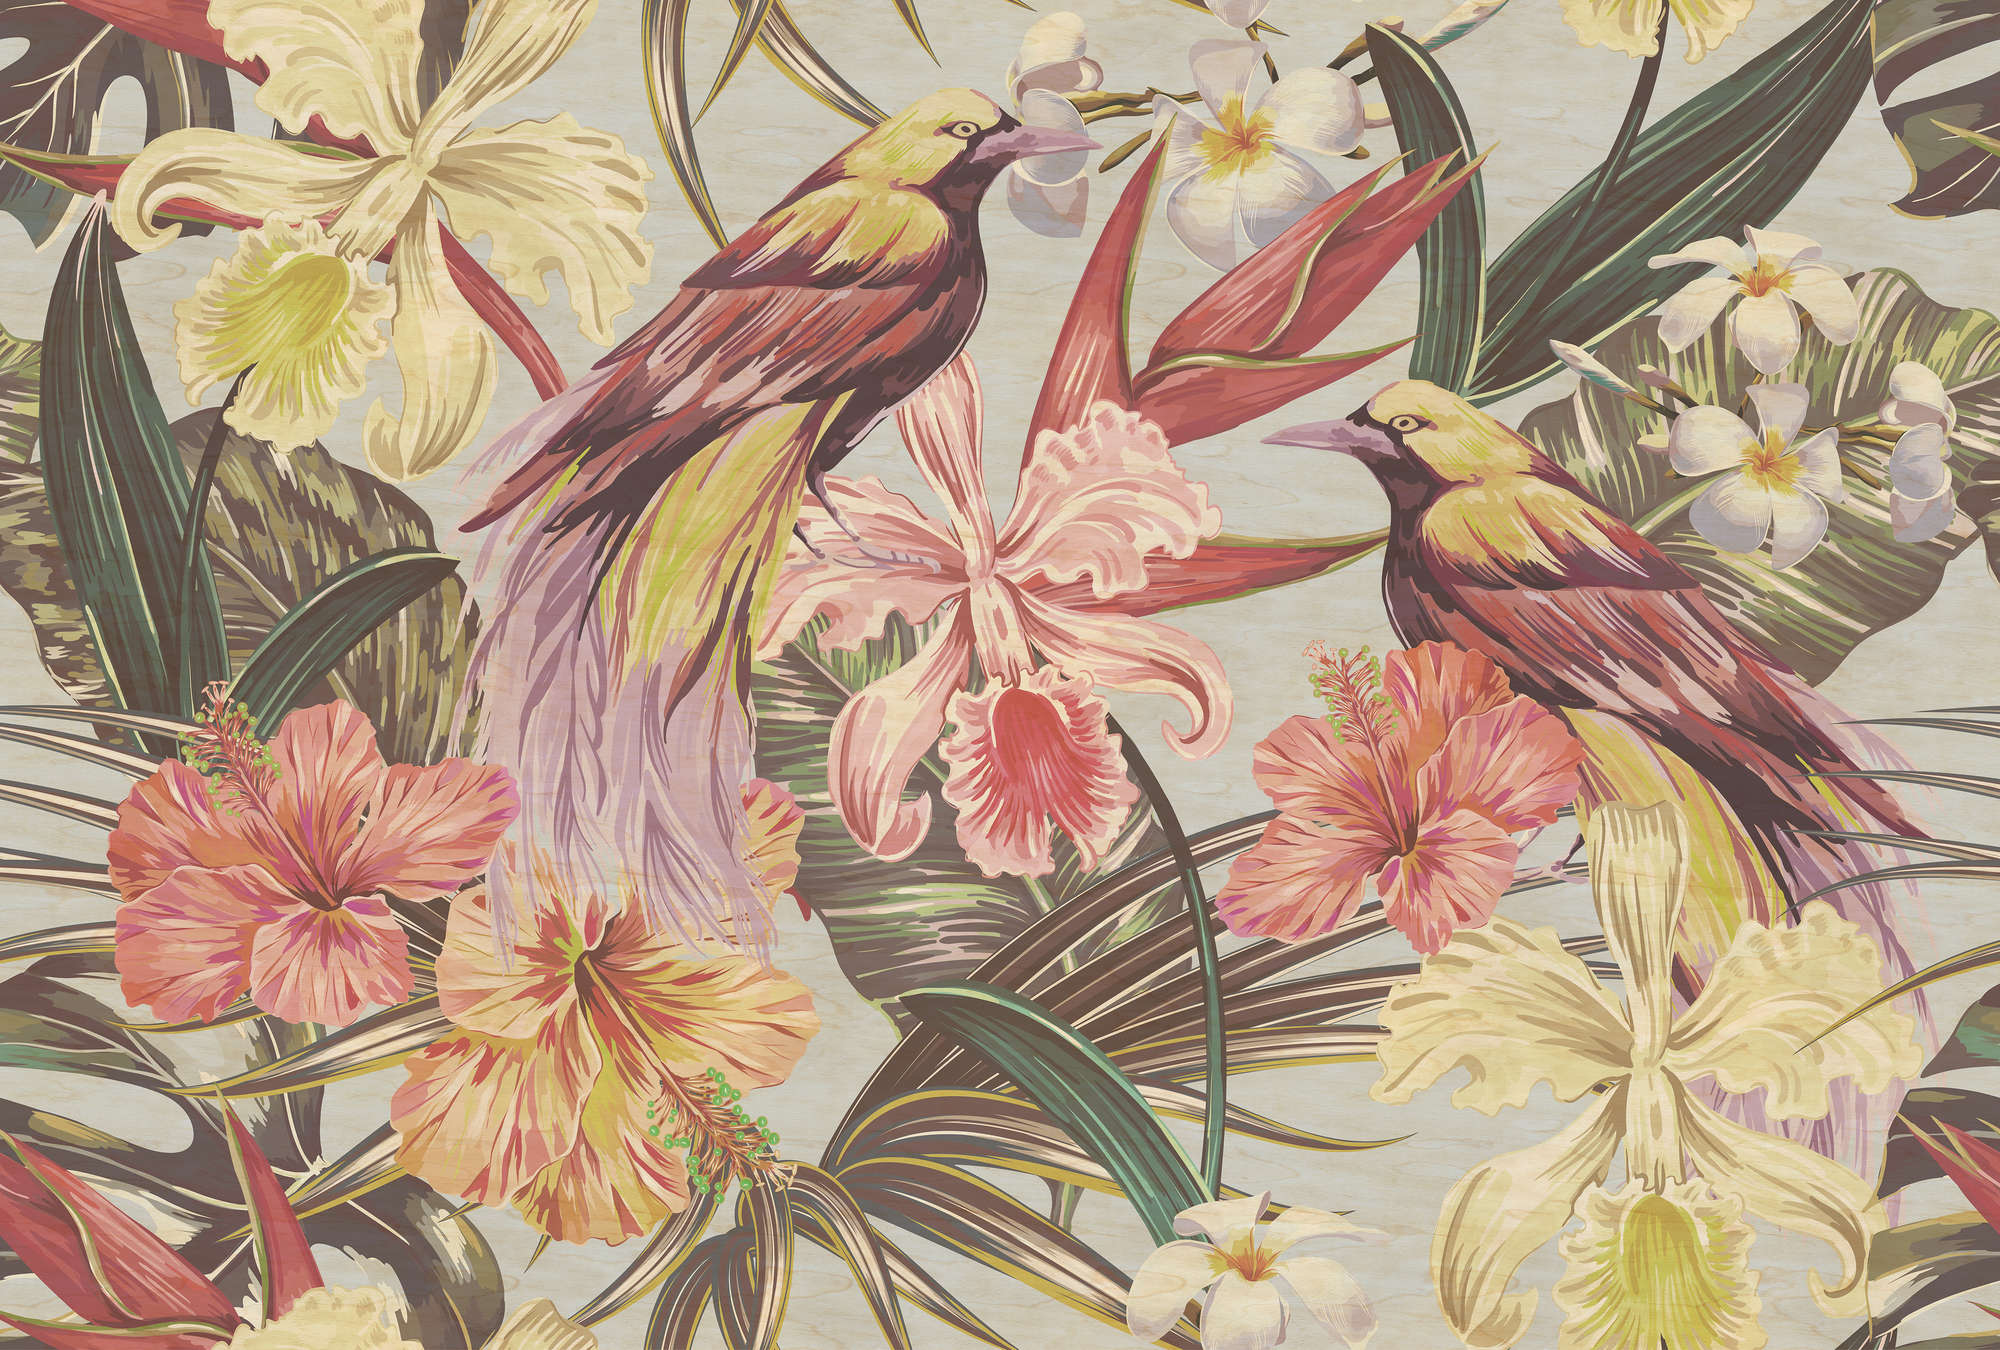             Exotic birds 1 - Papier peint Oiseaux exotiques et fleurs à structure contreplaquée - beige, rose | Intissé lisse mat
        